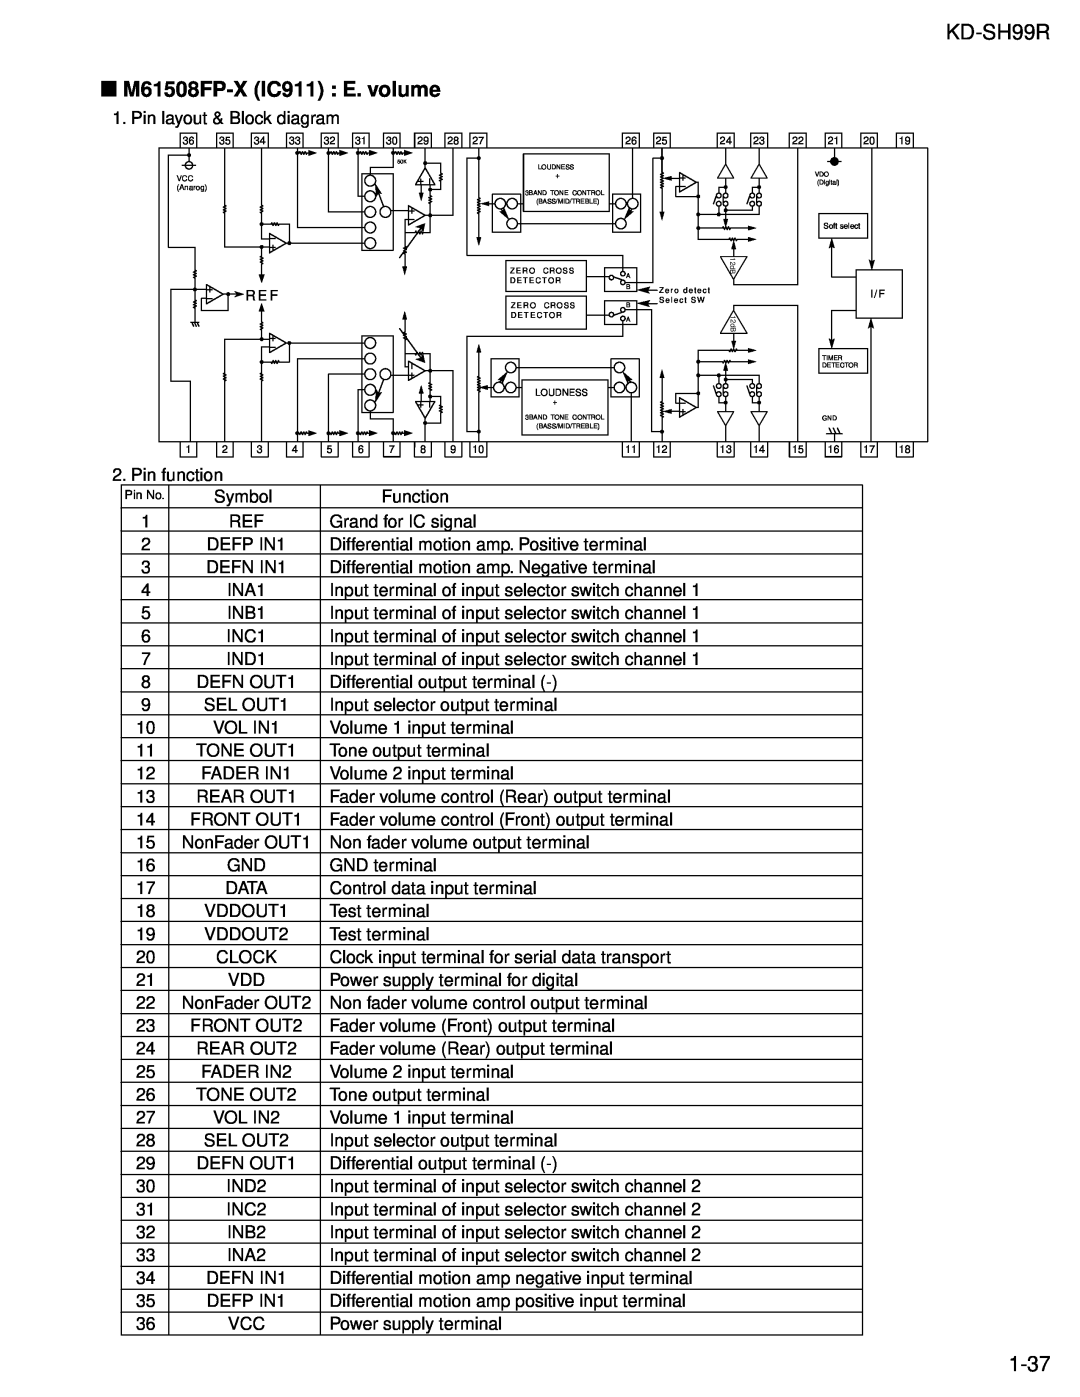 JVC KD-SH99R service manual M61508FP-XIC911 E. volume, 1-37 